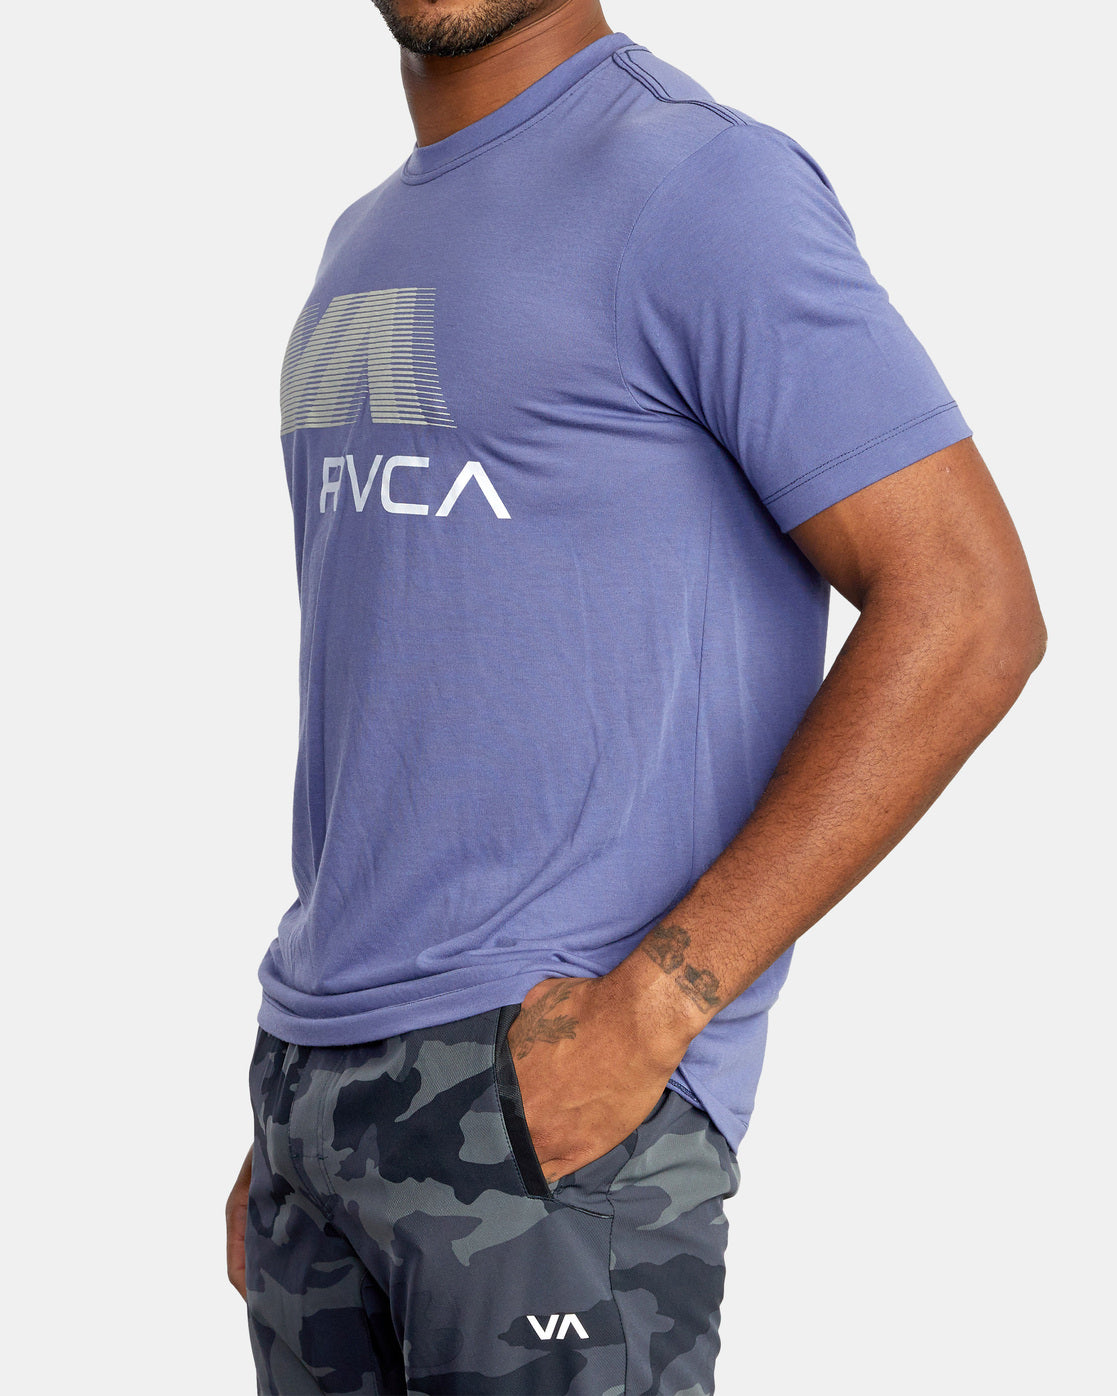 VA RVCA Blur - T-Shirt for Men